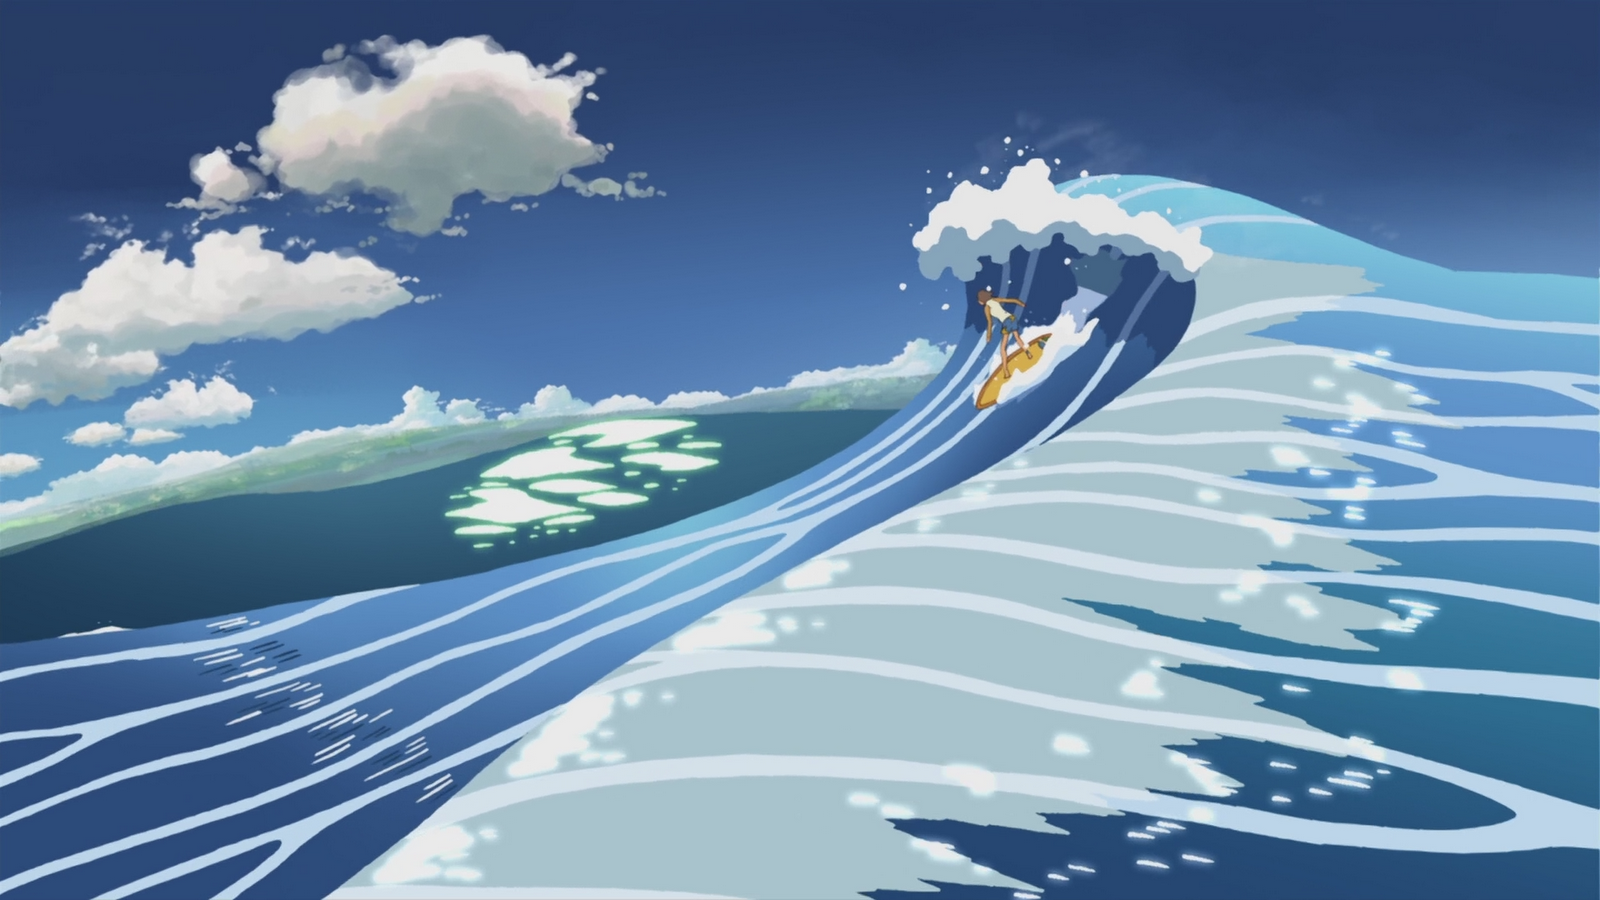 Cool Surfer Wallpapers - WallpaperSafari